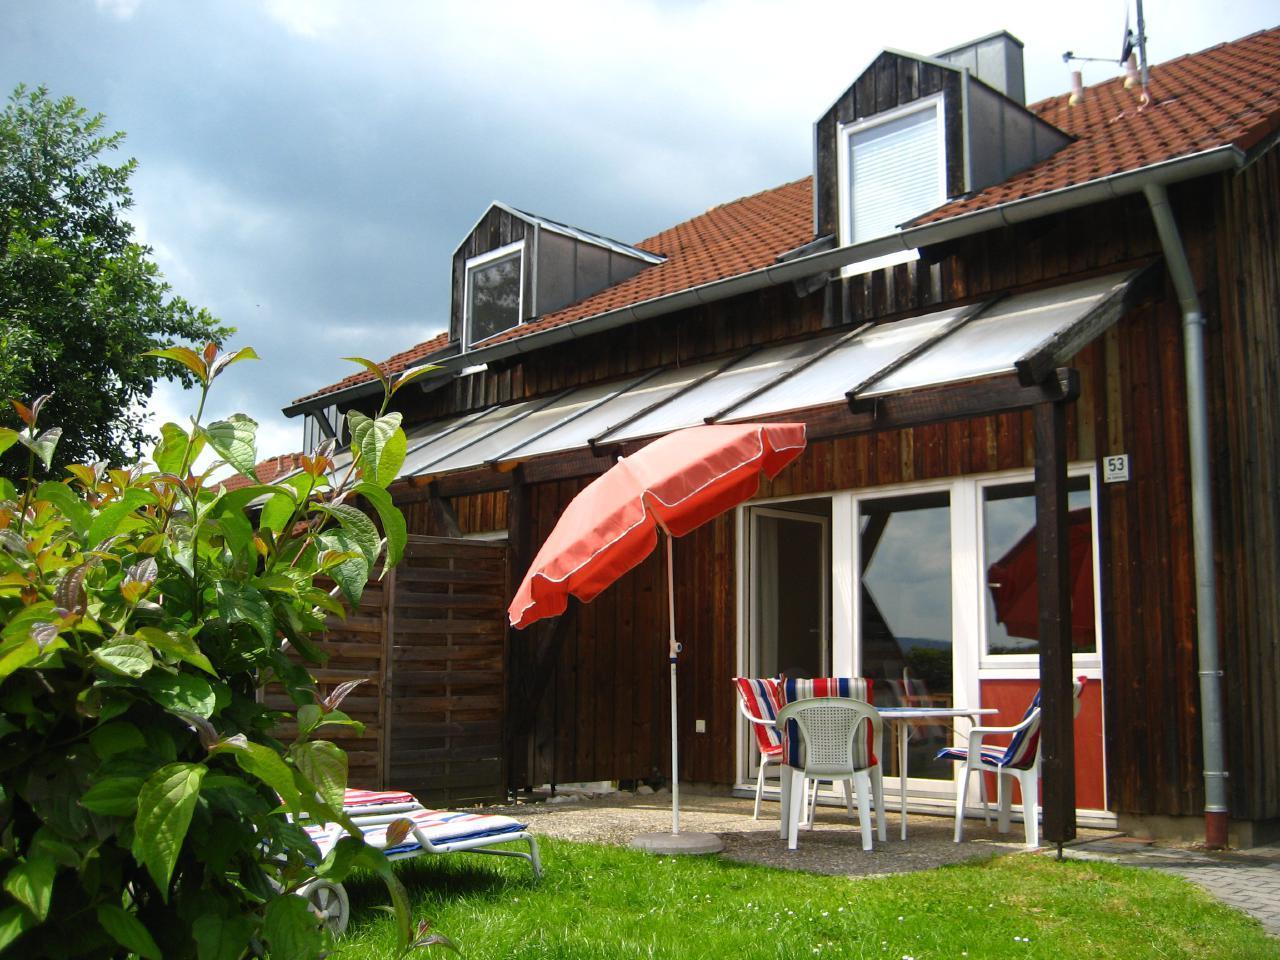 Ferienhaus in Zandt mit Grill, Garten und Terrasse  in Deutschland